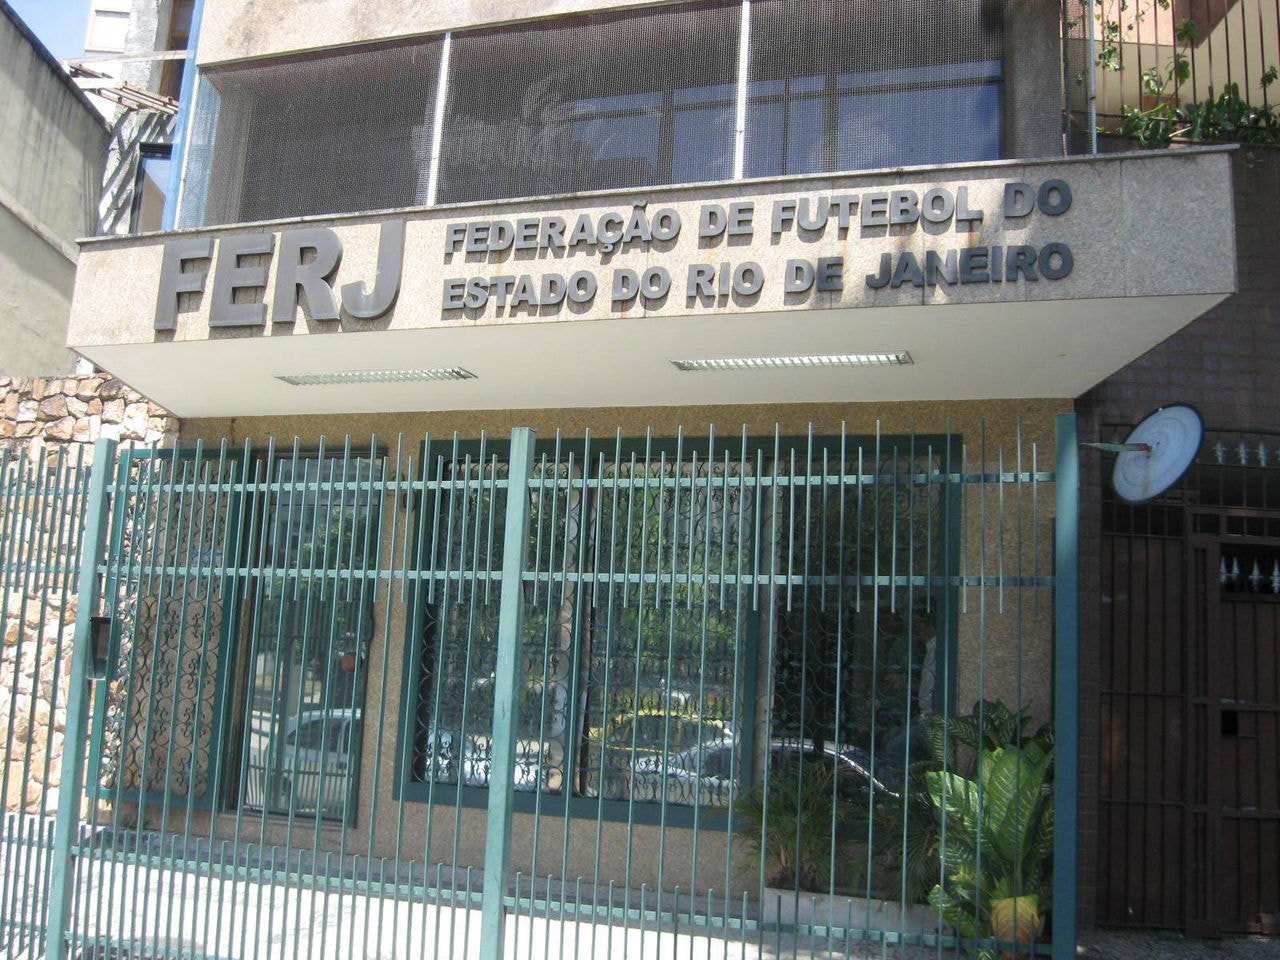 Fachada da Federação de Futebol do Rio deJaneiro